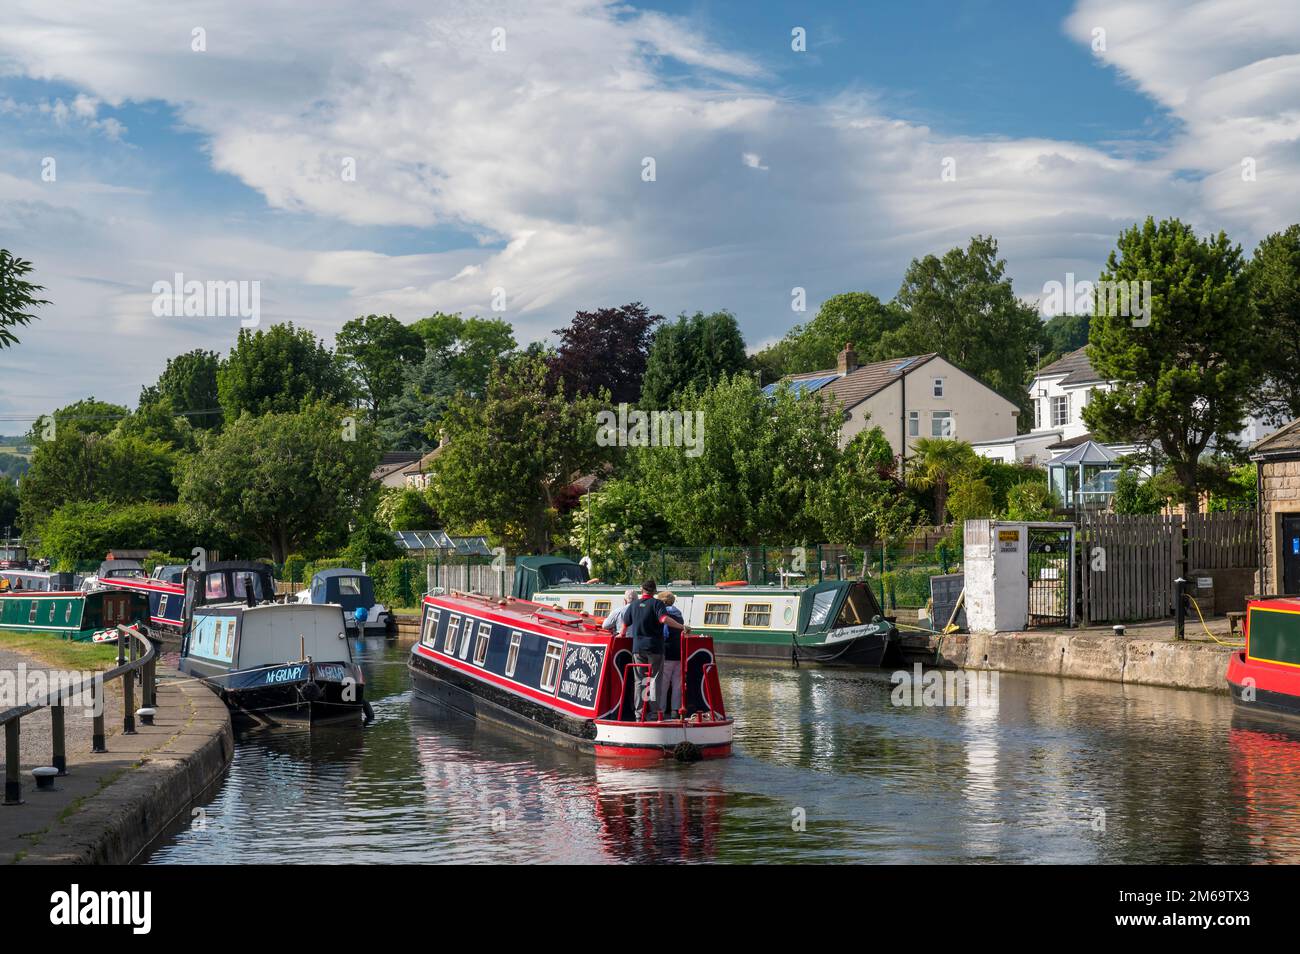 Kanalboot auf dem Leeds und Liverpool Canal in der Nähe von Five Rise Locks, Bingley, West Yorkshire, England Stockfoto